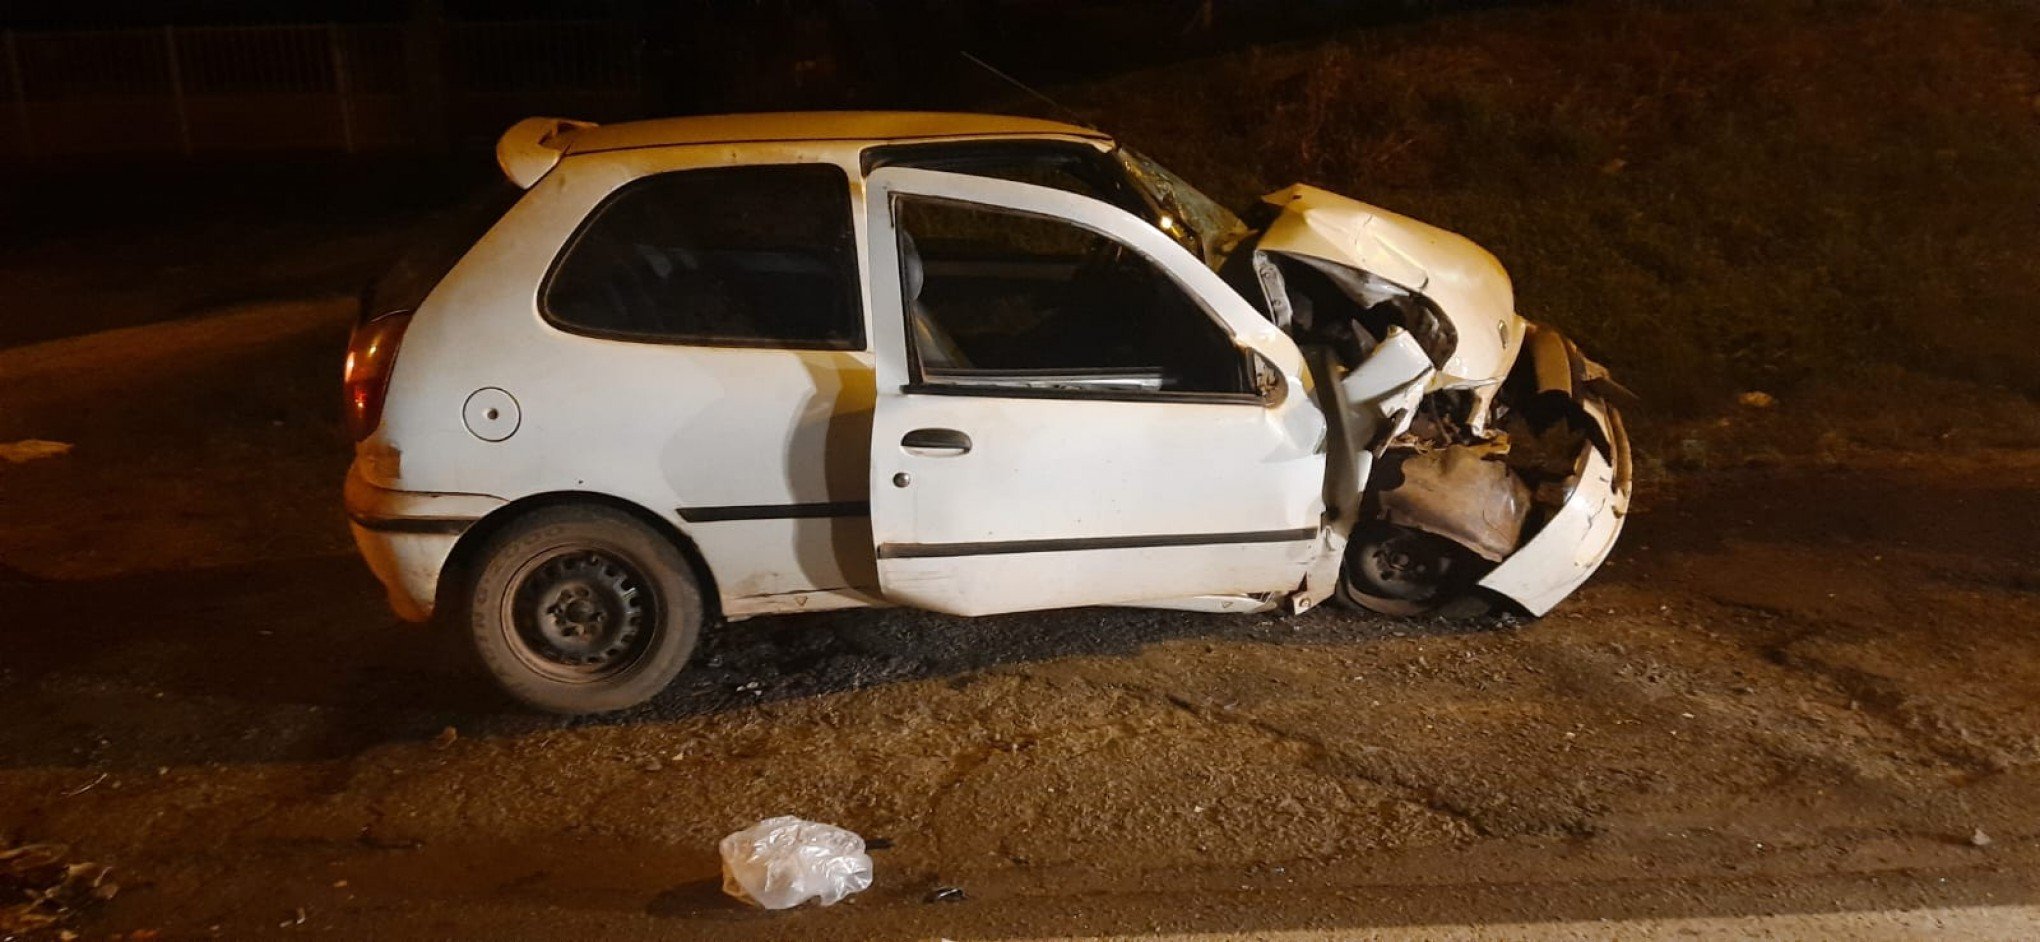 COLISÃO FATAL: Identificada passageira que morreu em acidente entre carro e ônibus na RSC-287